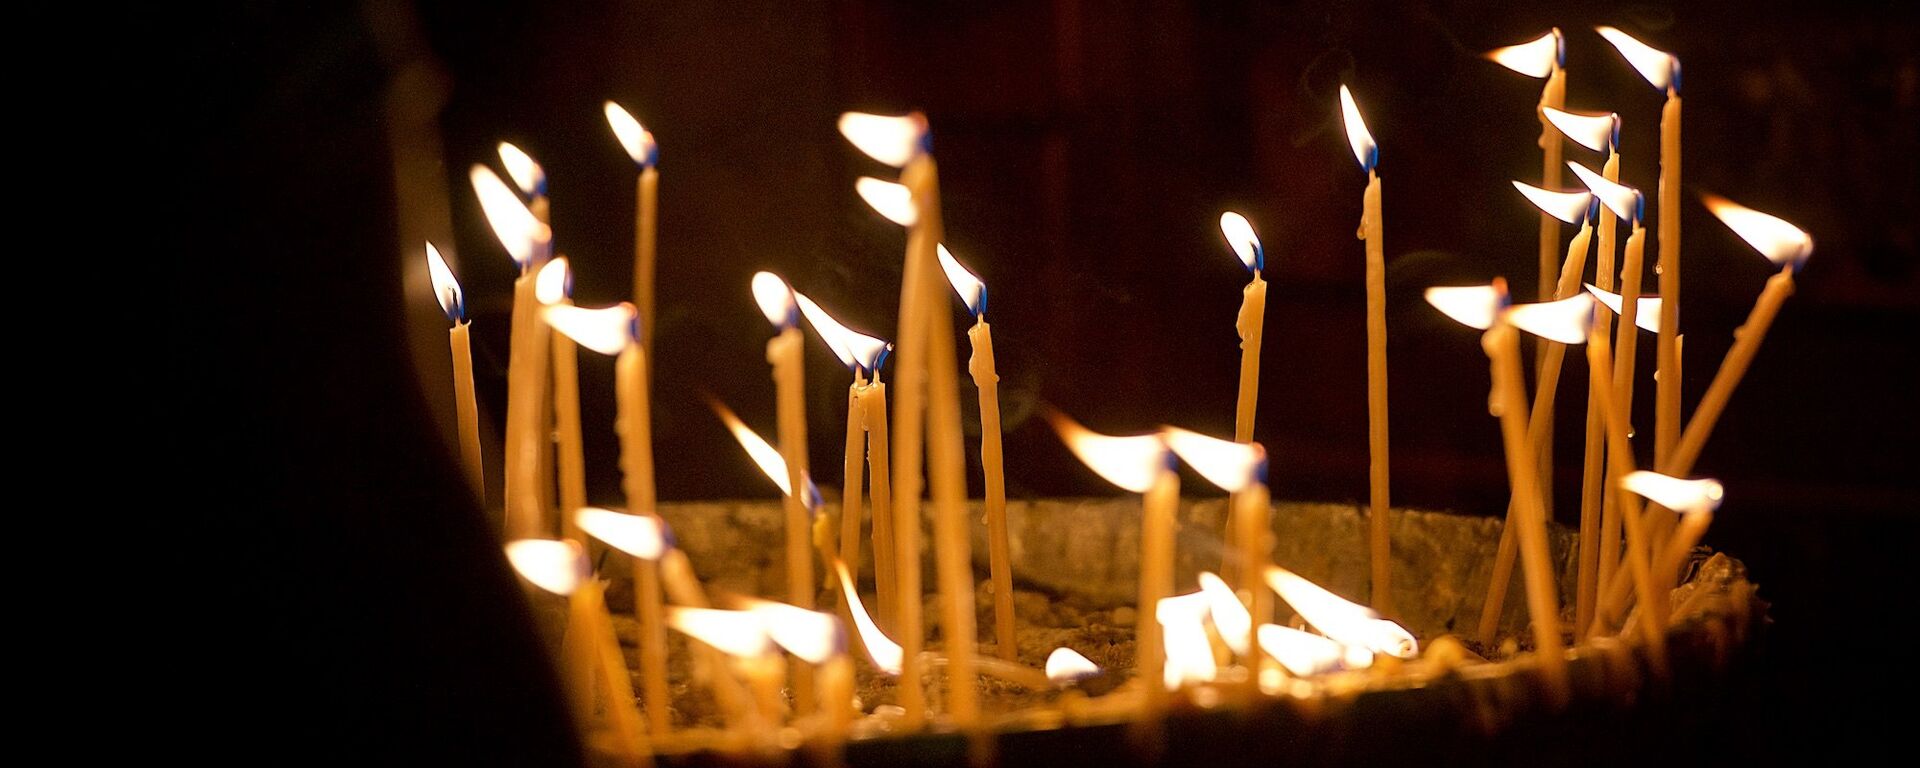 Горящие свечи в храме Светицховели - Sputnik Грузия, 1920, 17.05.2021